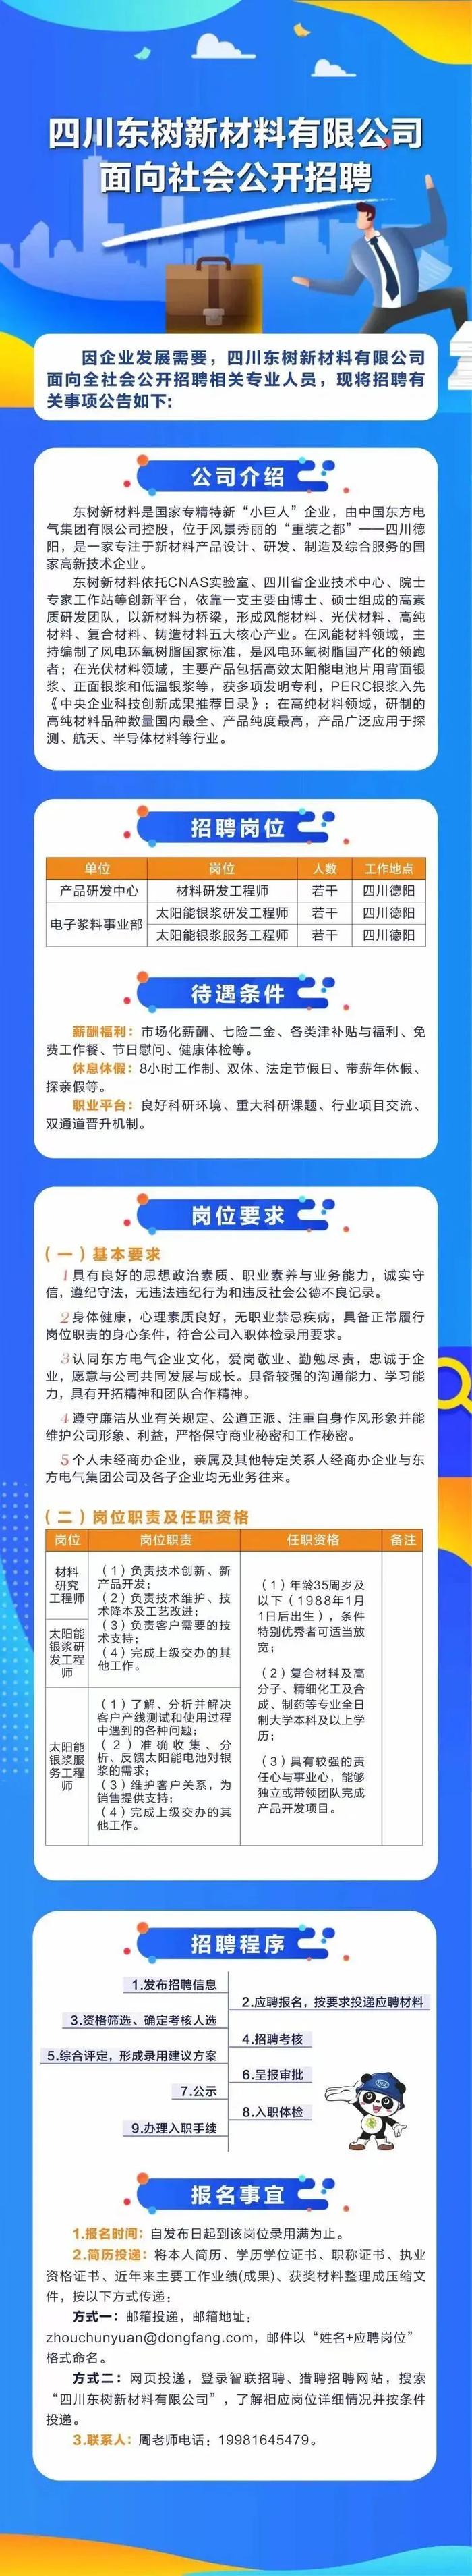 【社招】东方电气集团旗下四川东树新材料有限公司面向社会公开招聘